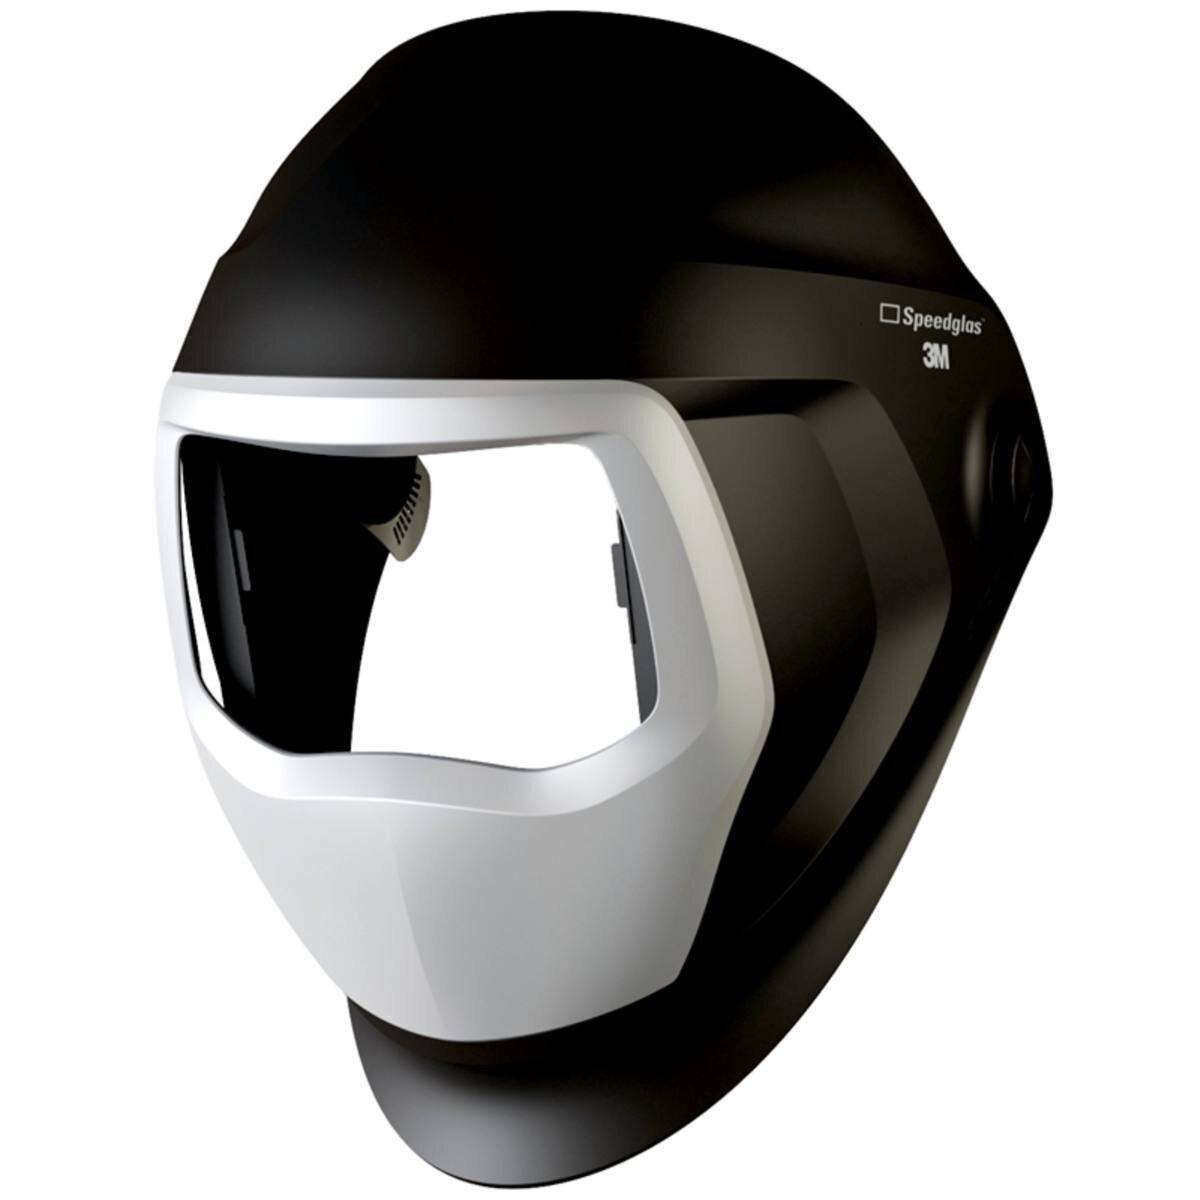 Masque de soudure 3M Speedglas 9100 avec fenêtre latérale, sans serre-tête, sans ADF Filtre de soudage automatique #501890